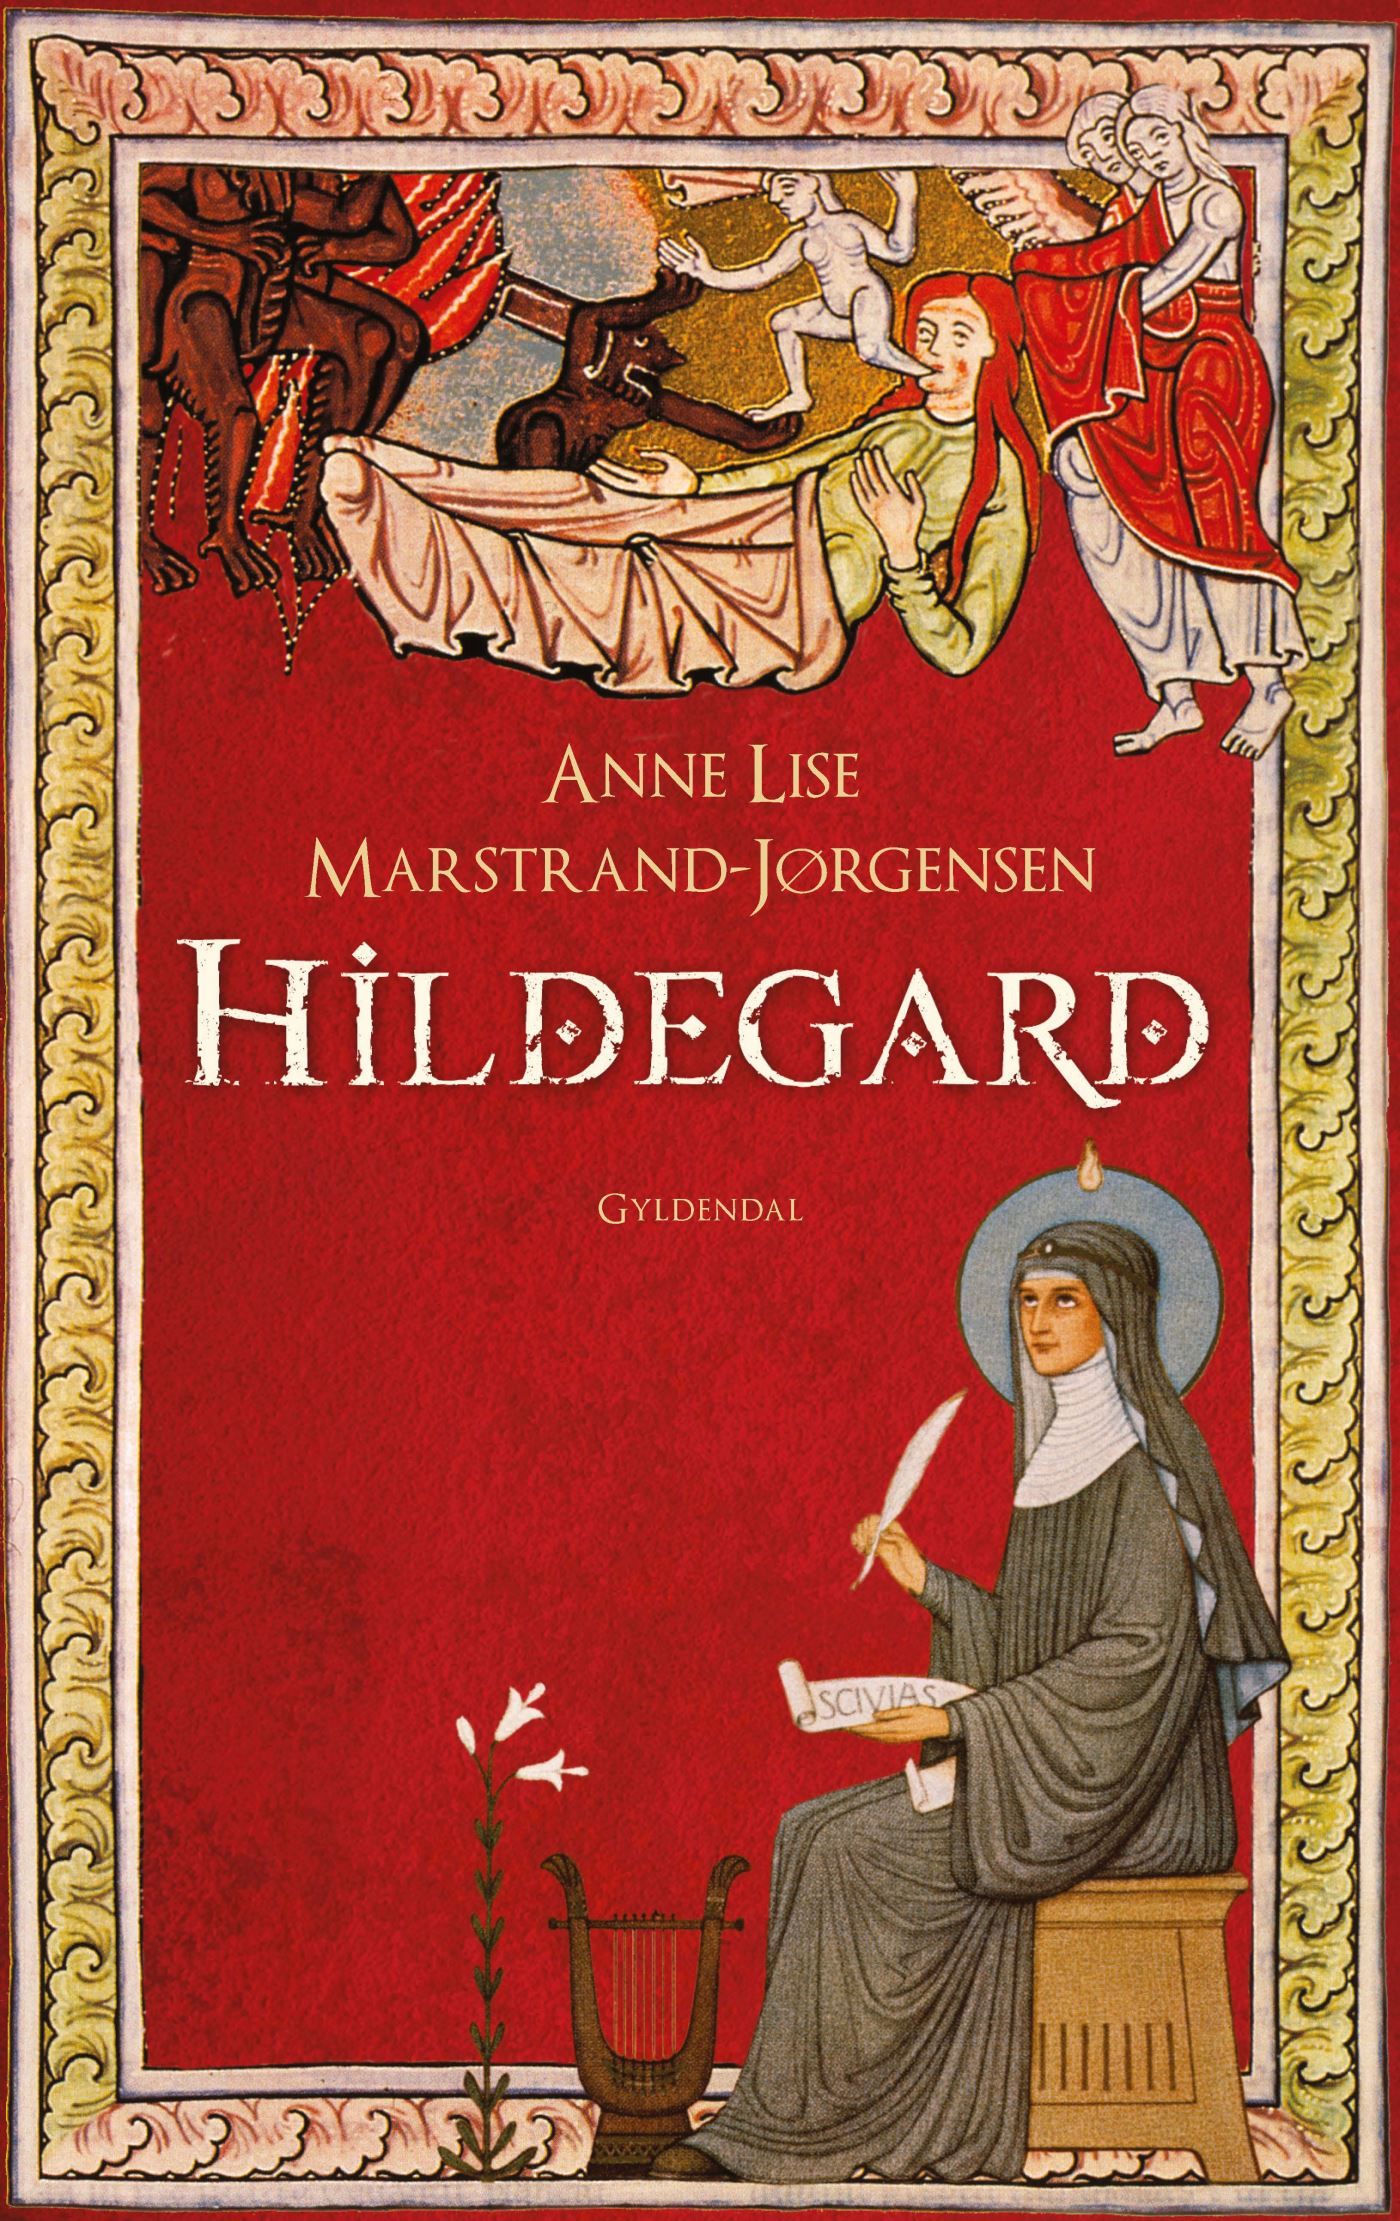 Hildegard, e-bog af Anne Lise Marstrand-Jørgensen